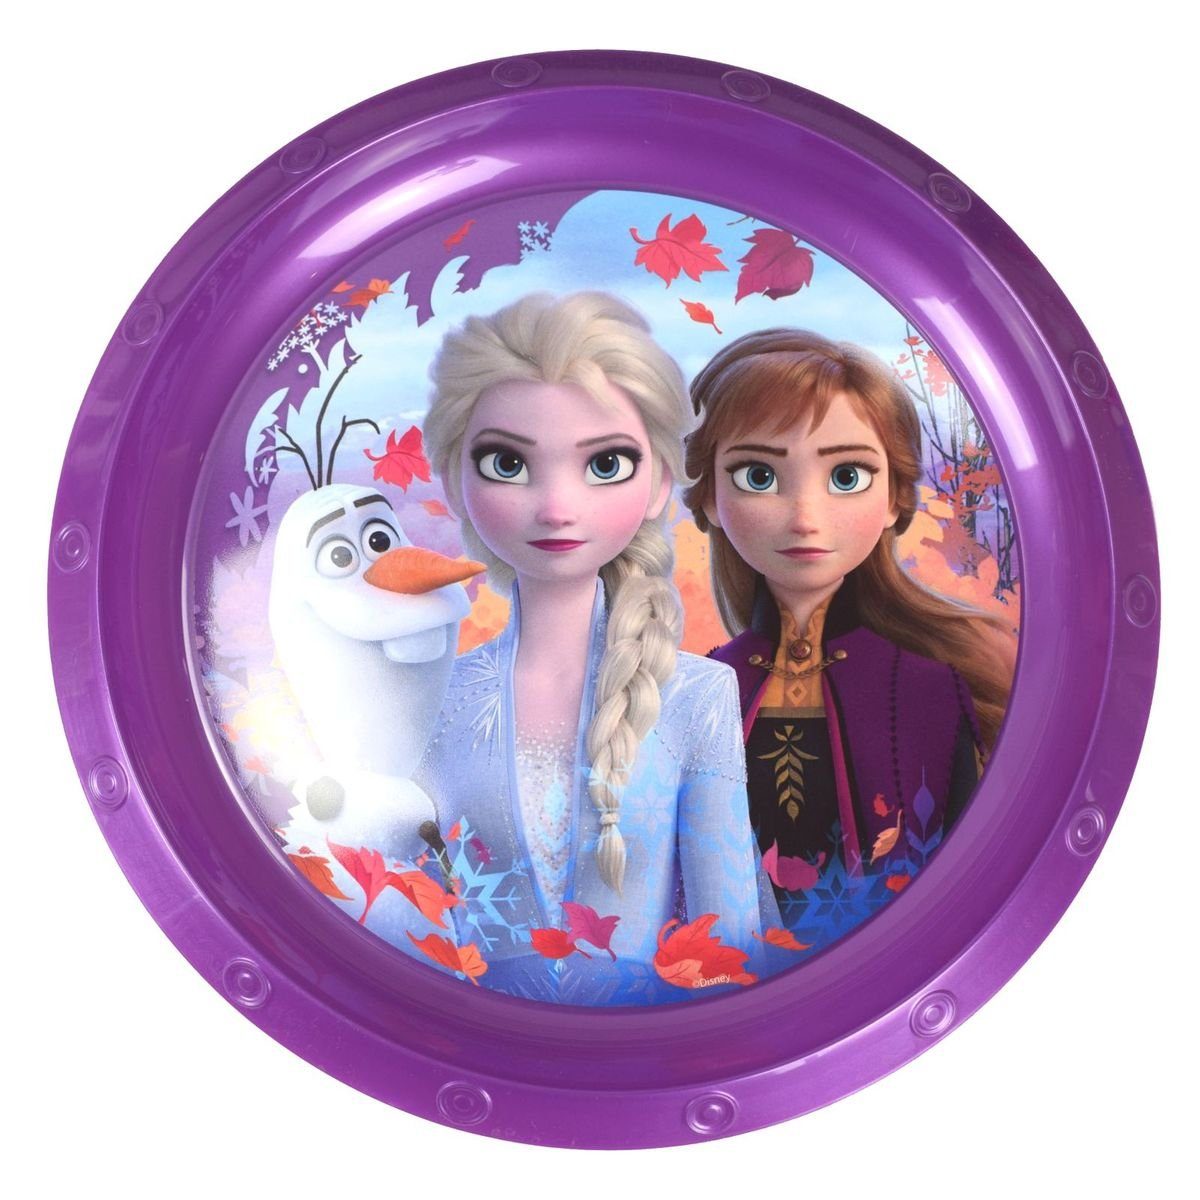 Stor Geschirr-Set Plastikteller Ø22 für Kinder Disney Frozen oder Peppa Wutz, Kunststoff Lila